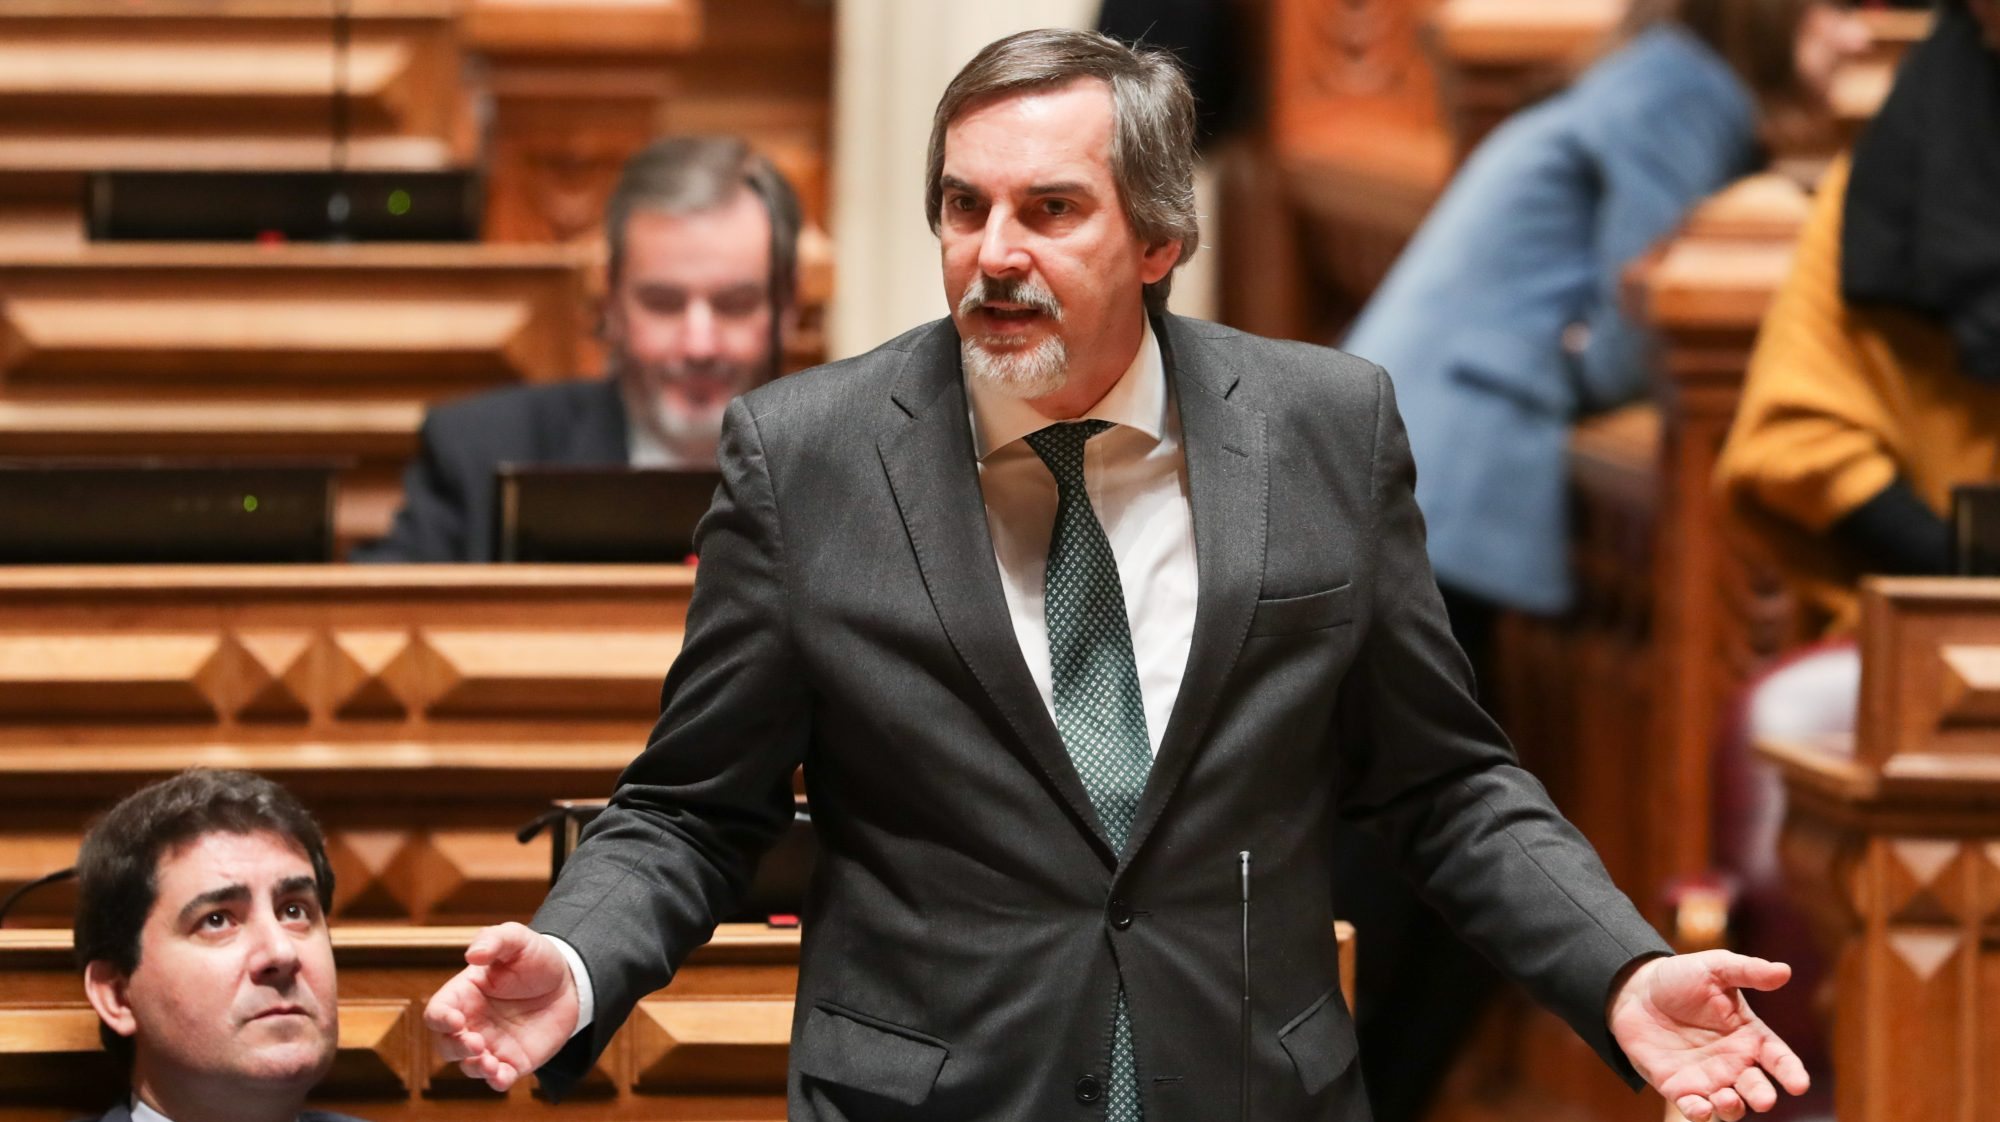 O deputado do PSD, Emídio Guerreiro, criticou a resposta pública à crise da Covid-19